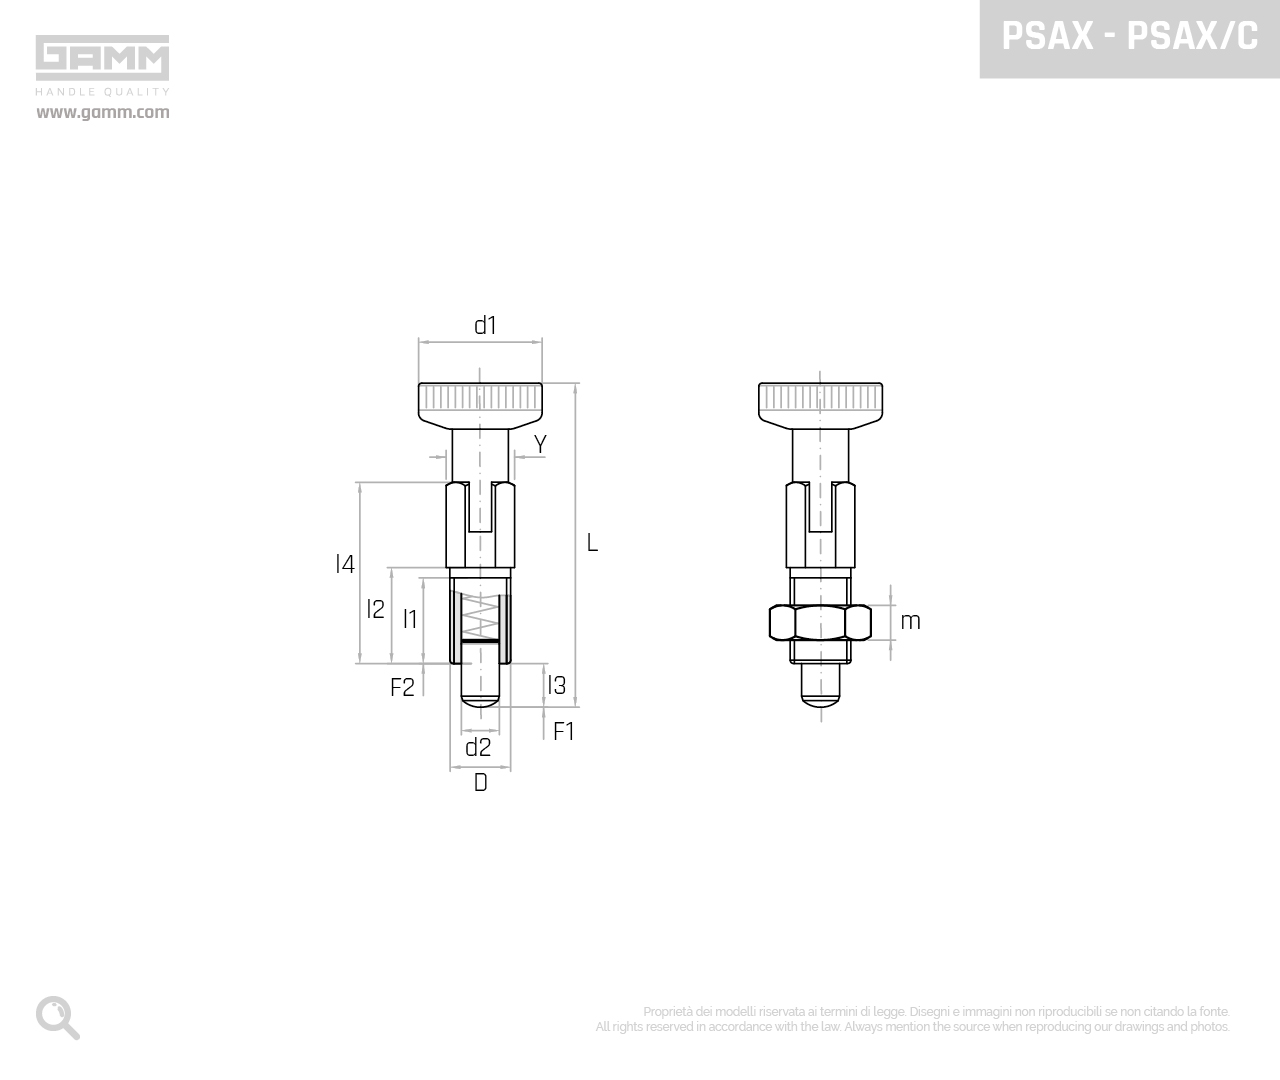 PSAX PSAX C disegno pistoncini e pressori GAMM